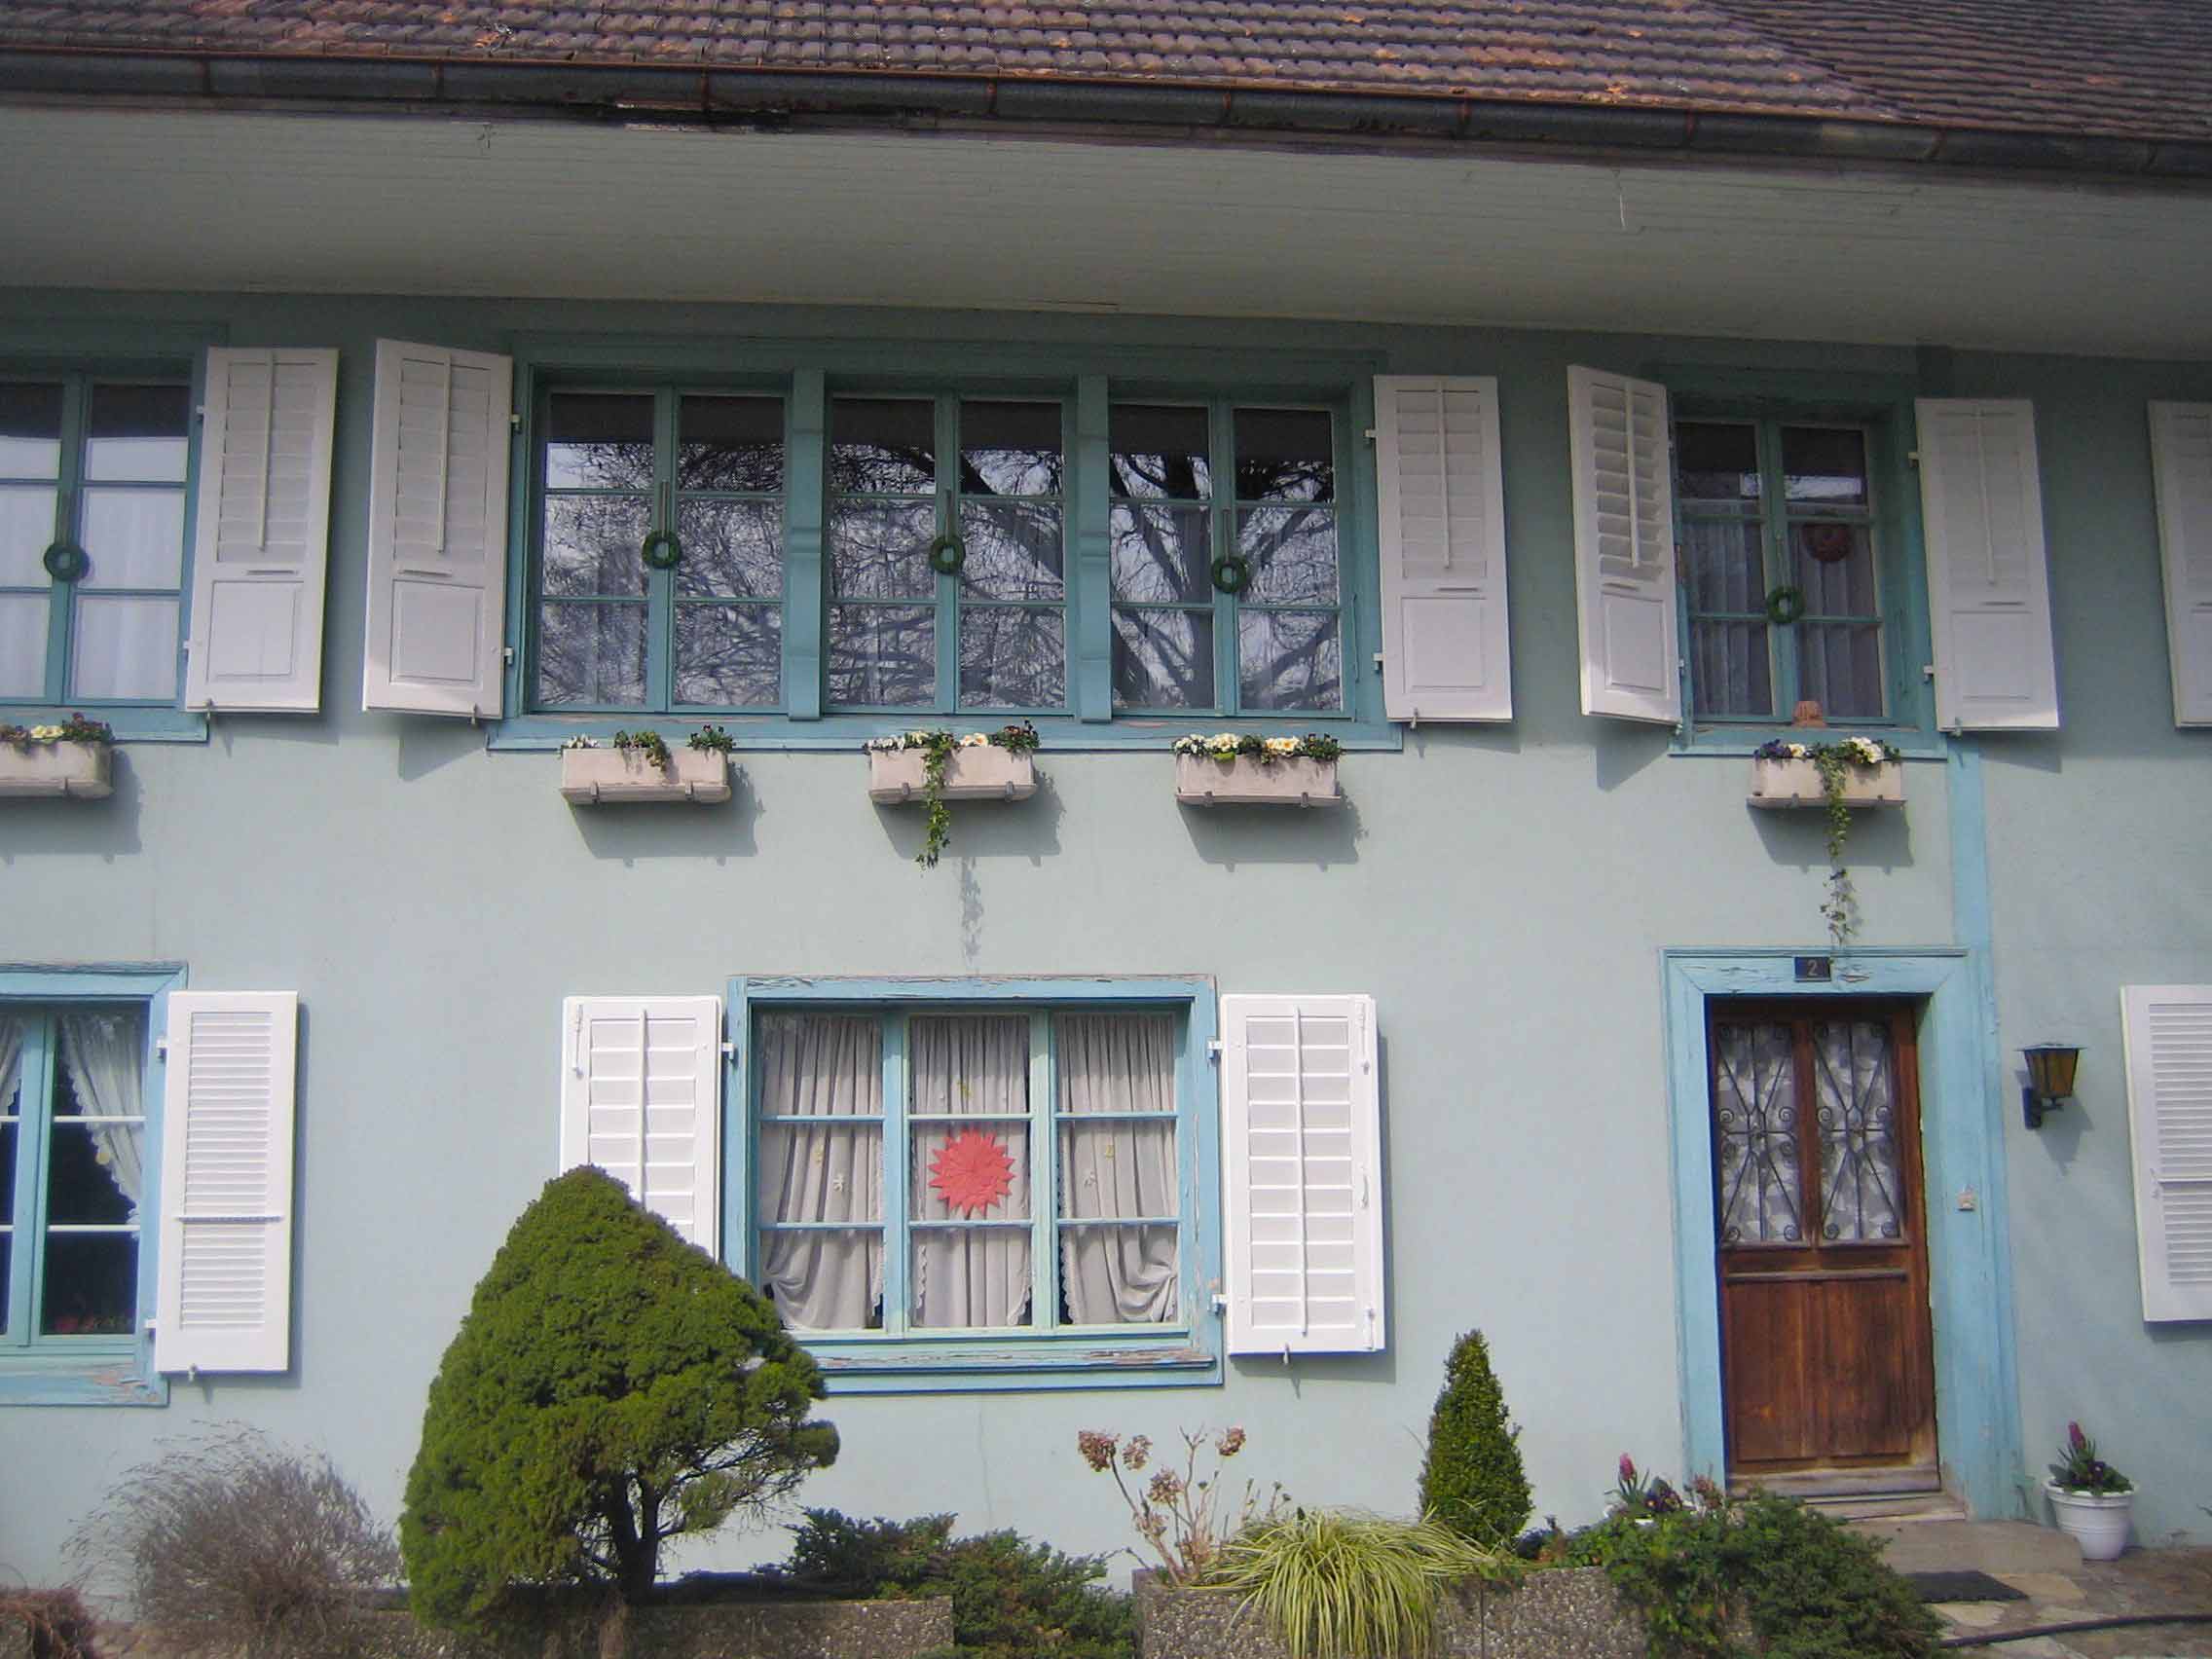 Haus in der Kirchgasse mit teilweise geschnitzten Fensterrahmen - House in Kirchgasse, with some of the window frames carved